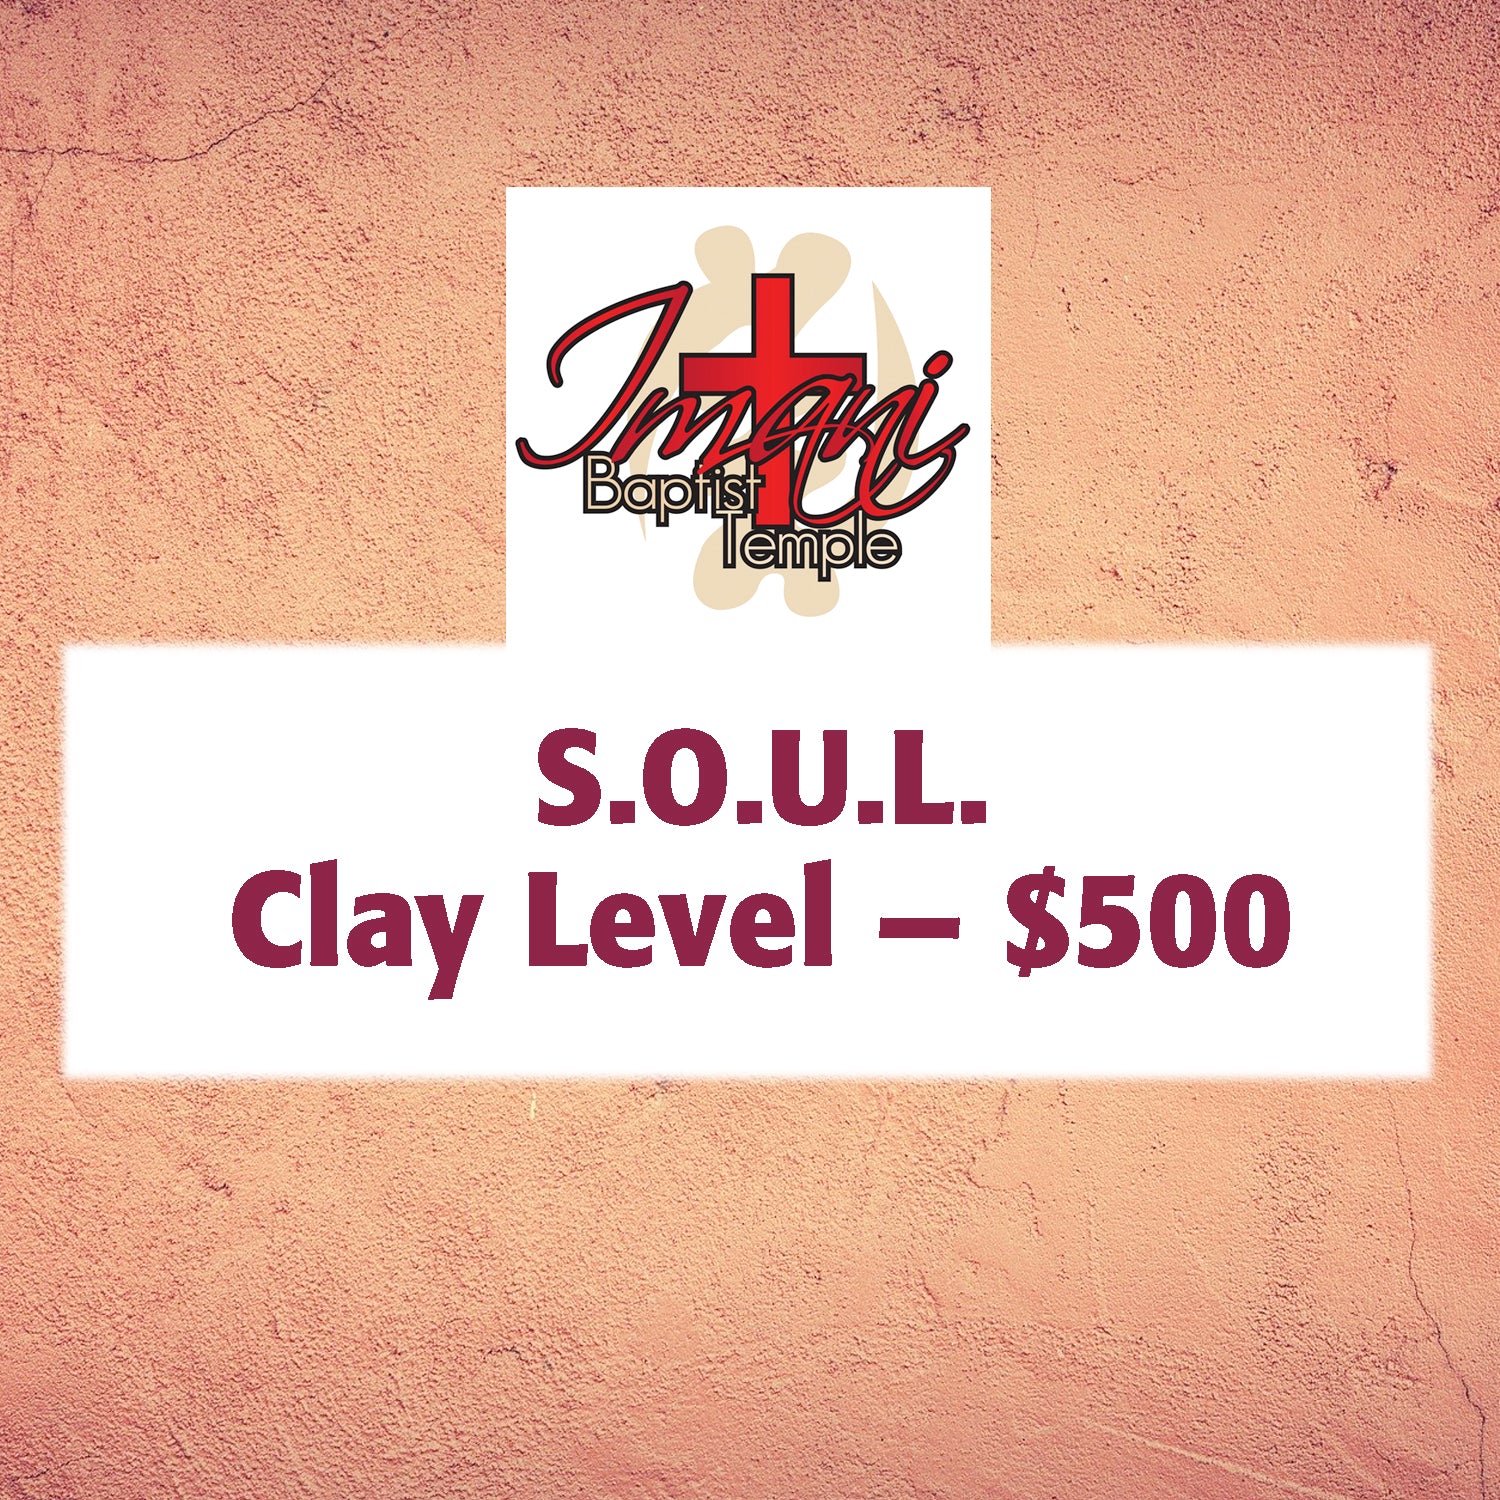 Clay Level - $500